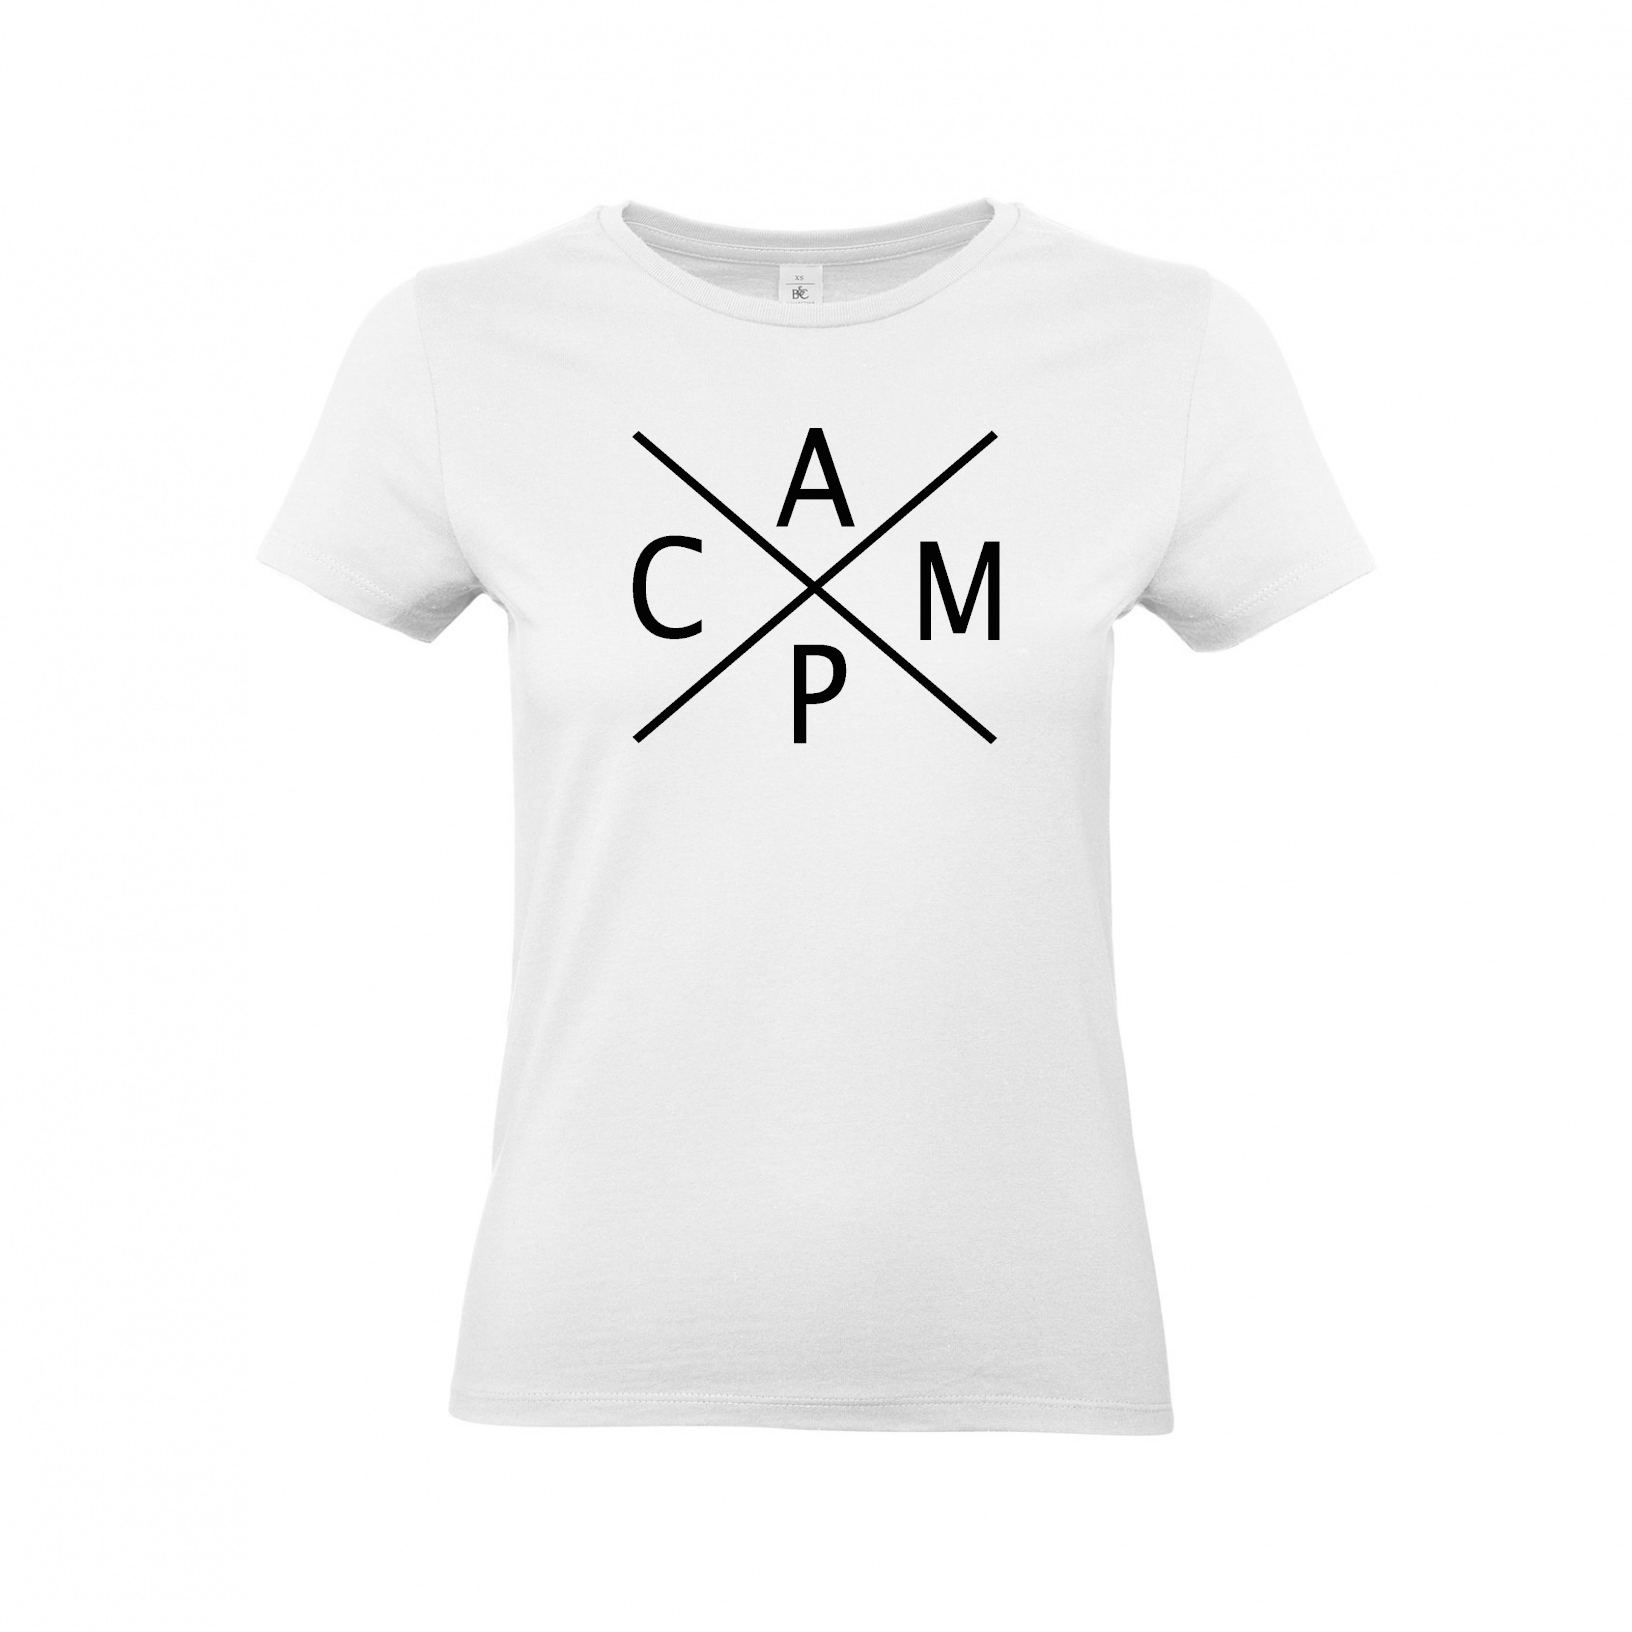 C A M P - Camping T-Shirt für Frauen